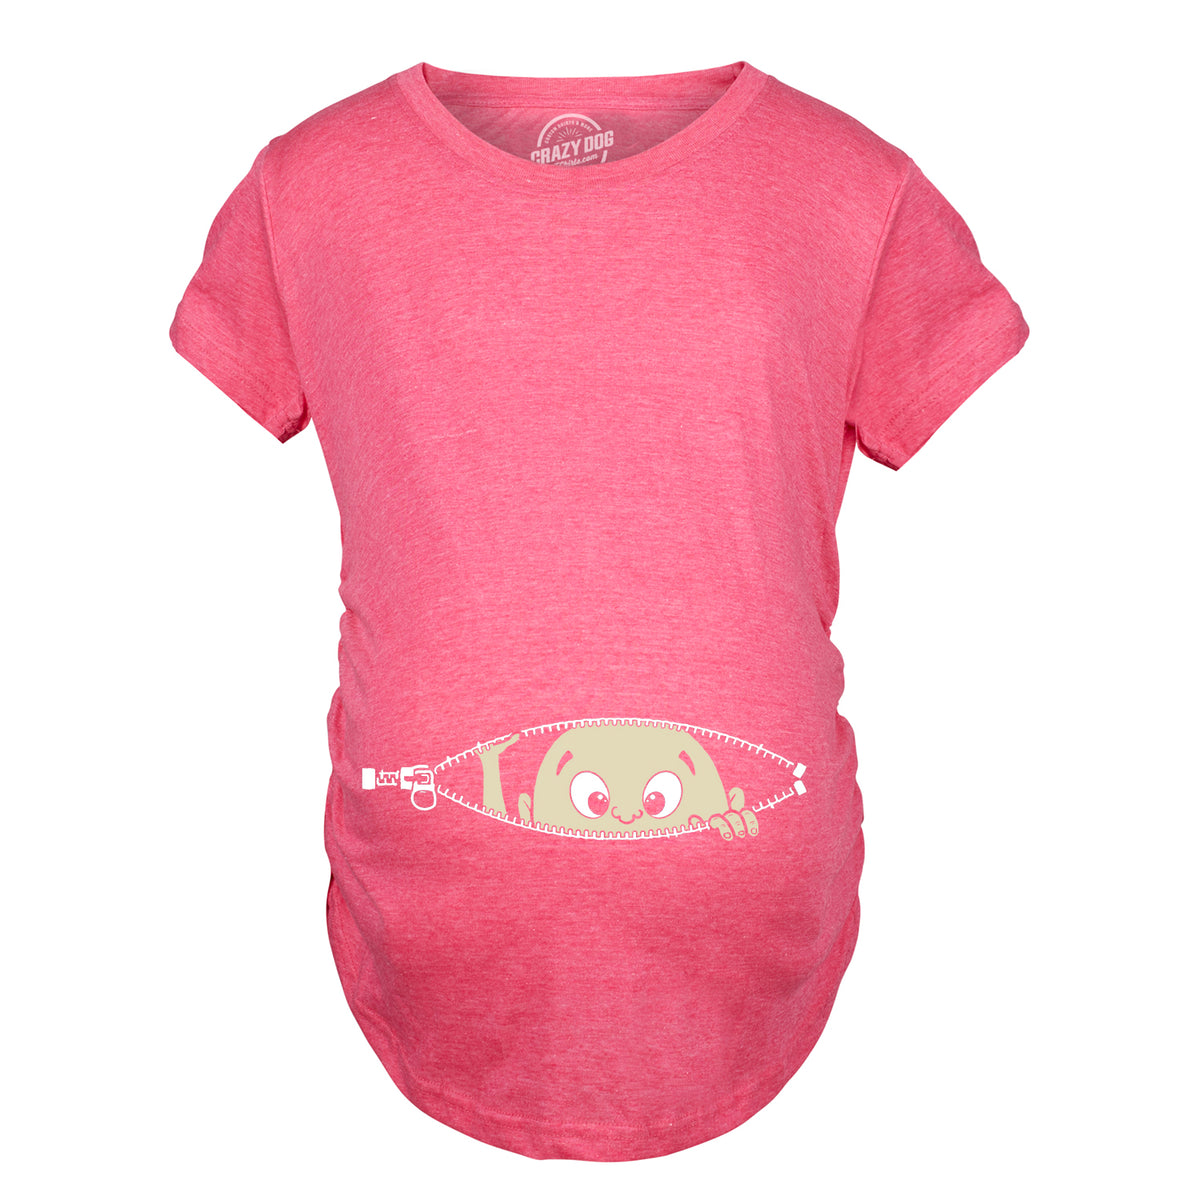 Funny Pink Peeking Baby Maternity T Shirt Nerdy Peeking Tee